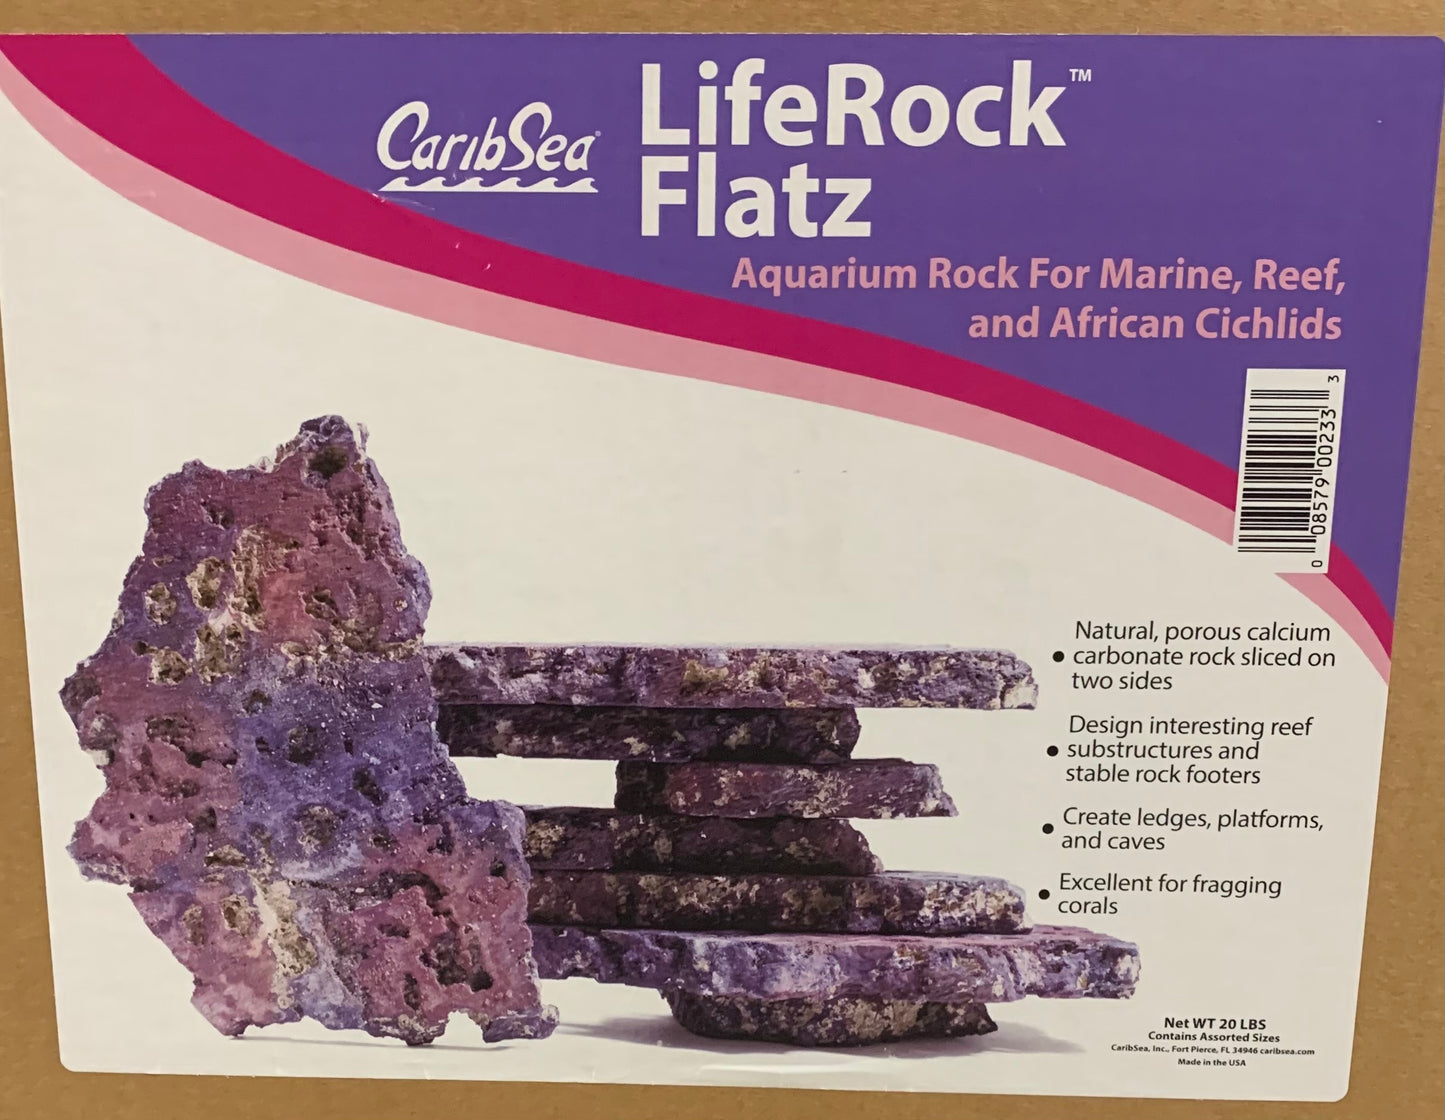 LifeRock Flatz